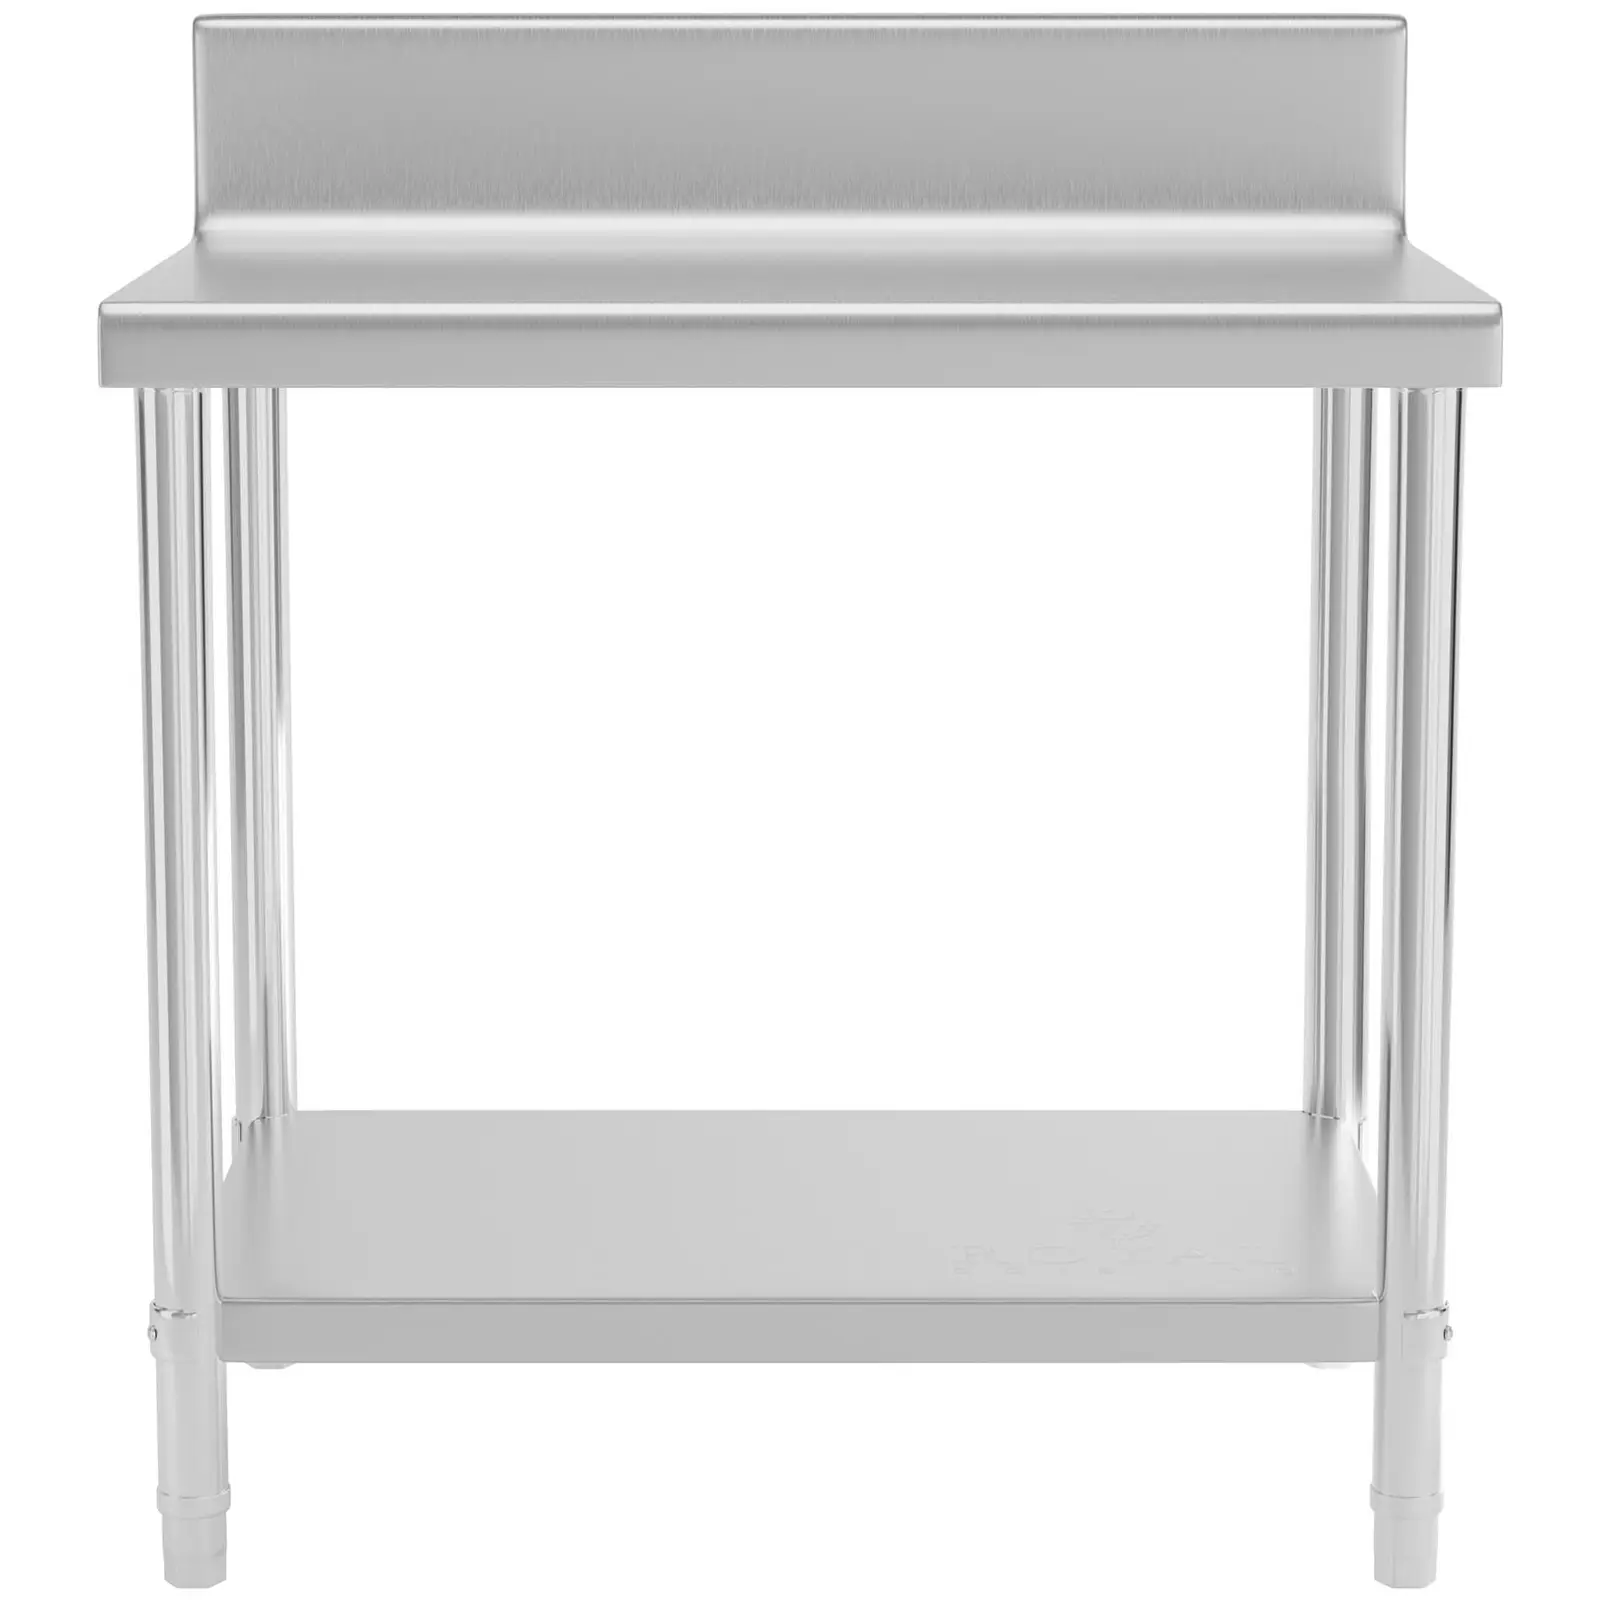 Pracovný stôl z nehrdzavejúcej ocele - 90 x 60 cm - lem - nosnosť 210 kg